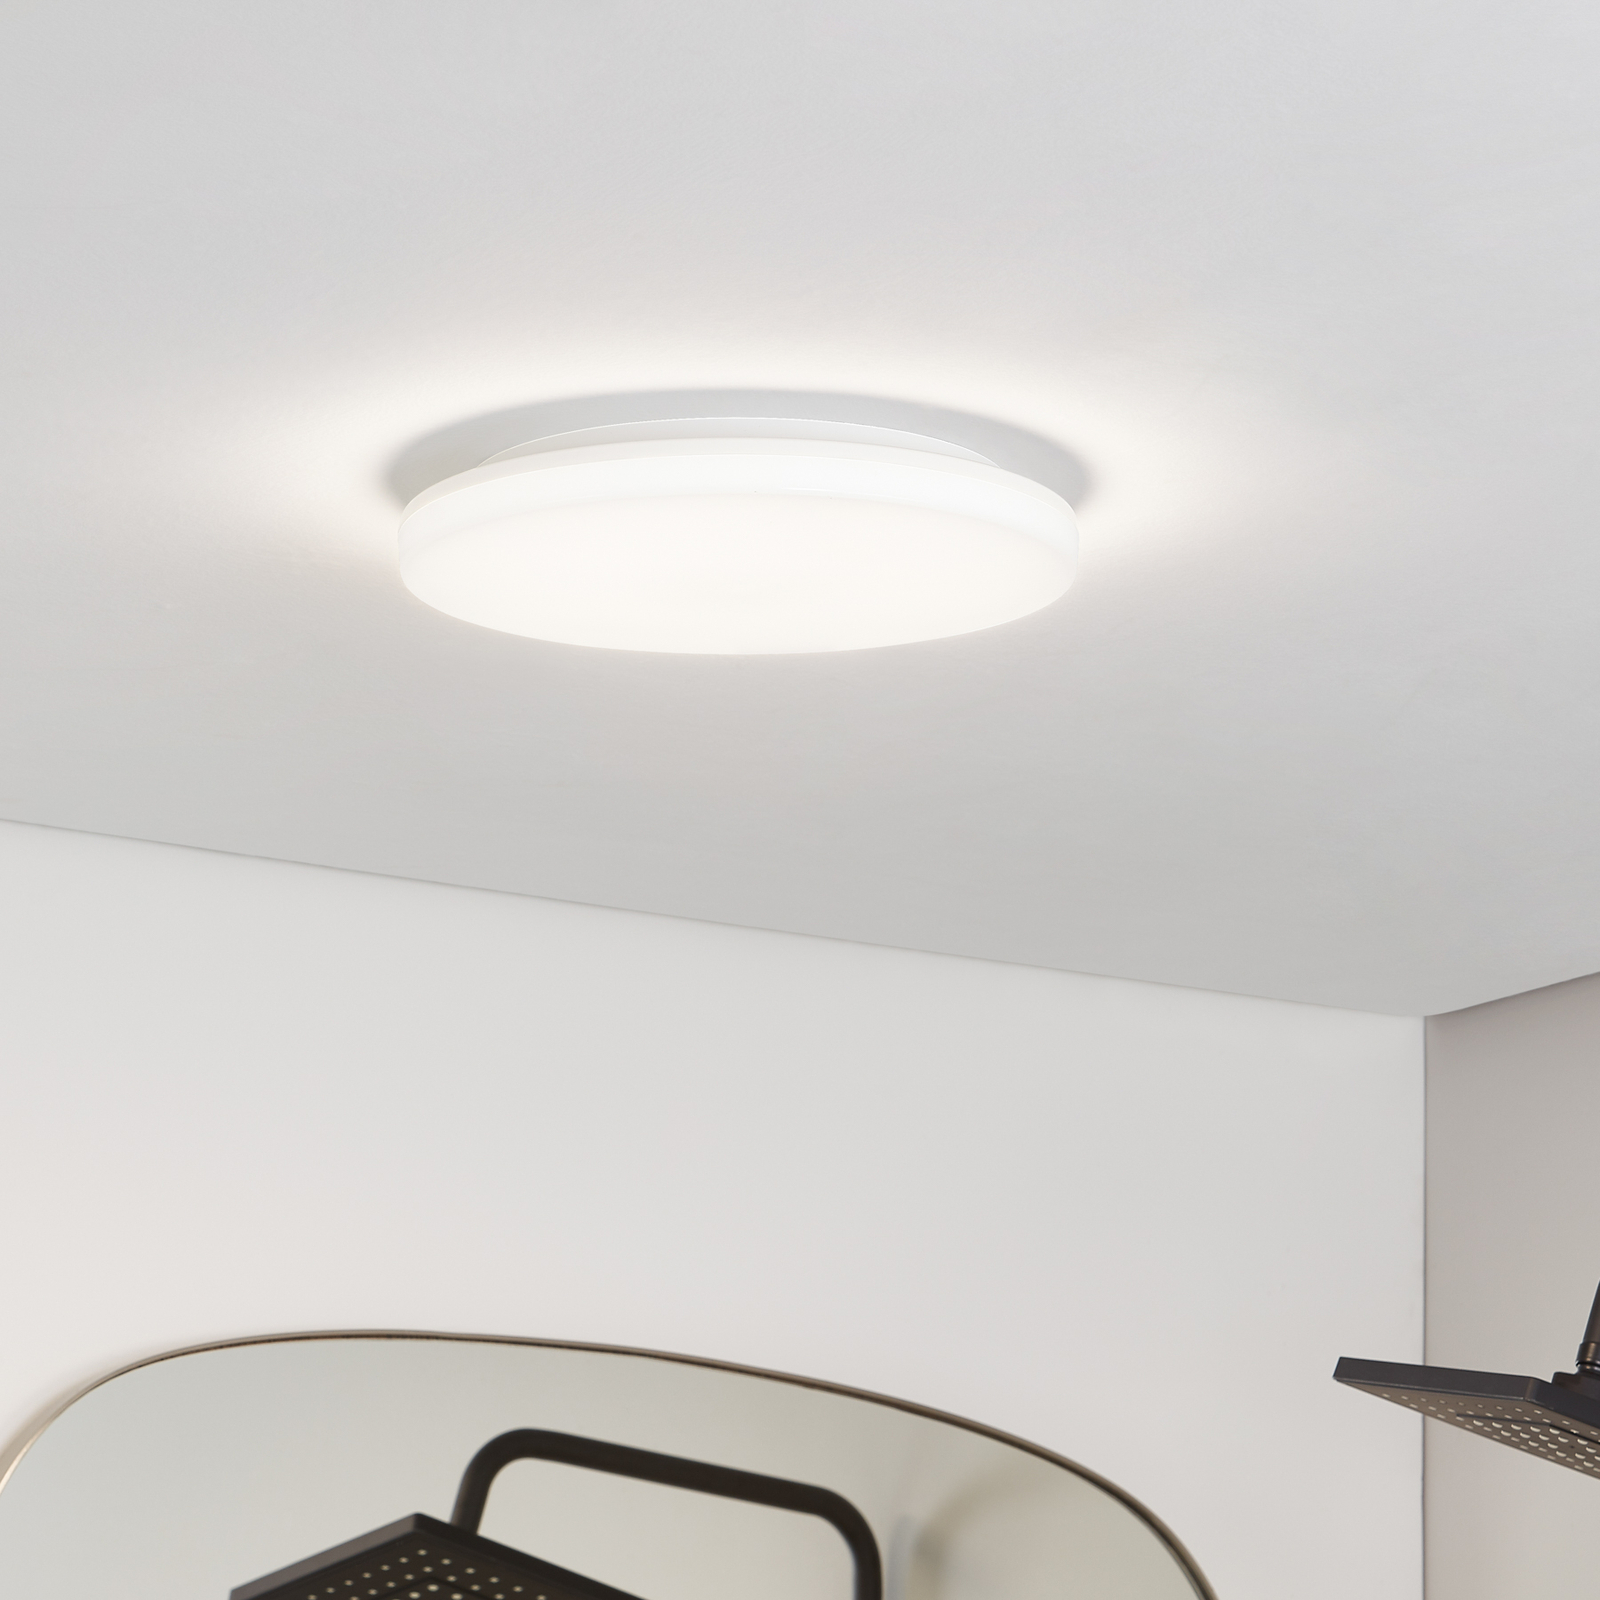 Prios Artin LED ceiling lamp, round, 33 cm